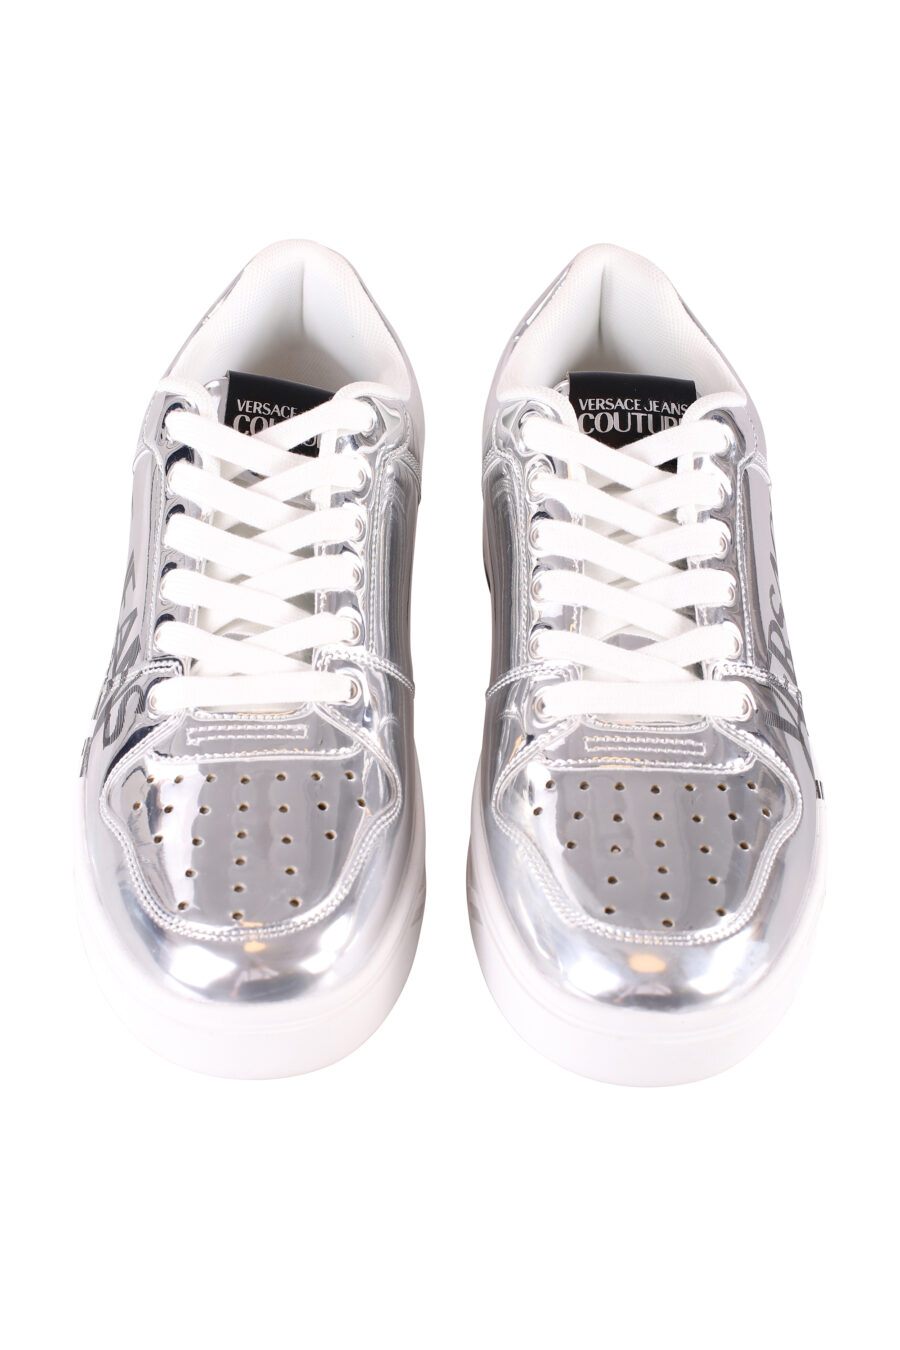 Silberne Schuhe mit Spiegeleffekt und Maxilogo - IMG 8501